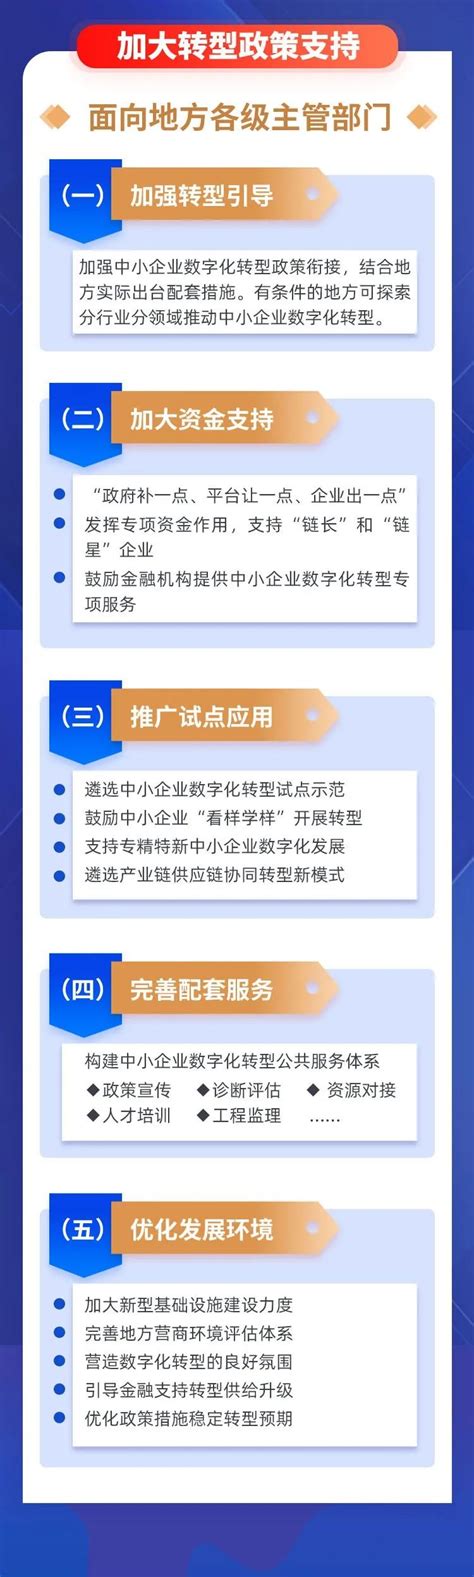 数字化转型技术架构方案-搜狐大视野-搜狐新闻